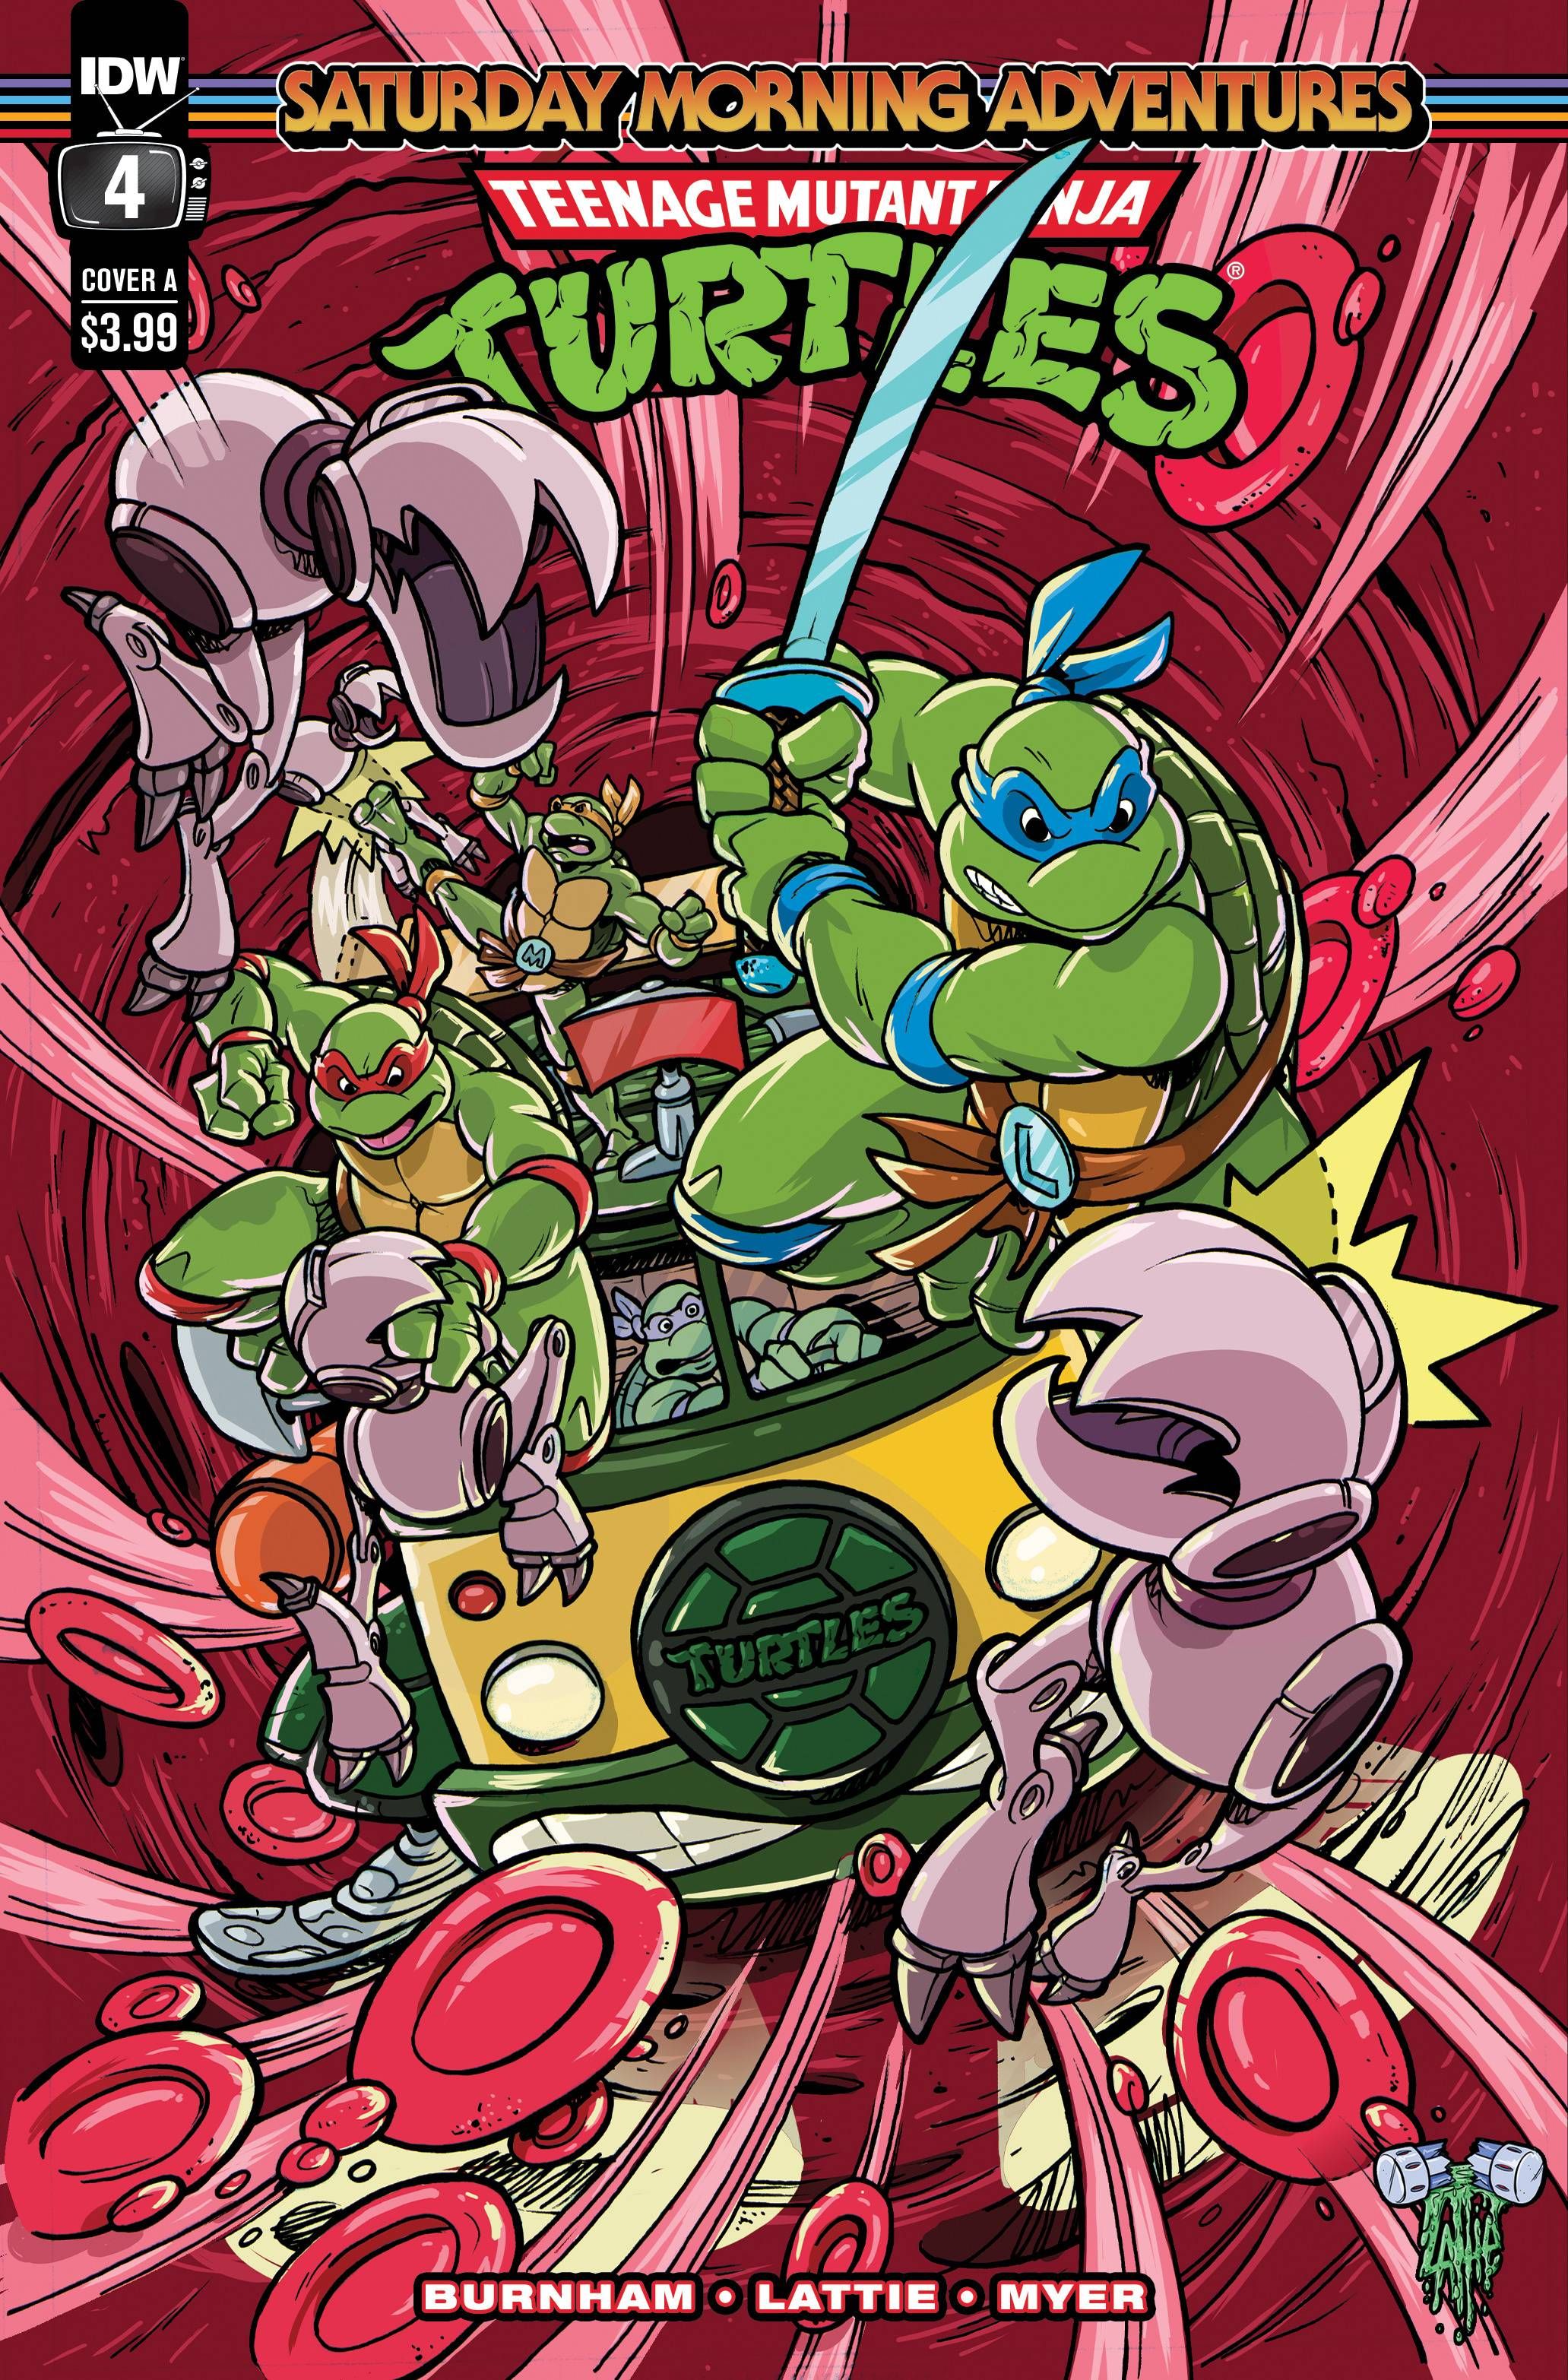 Teenage Mutant Ninja Turtles: Saturday Morning Adventures #4 Comic